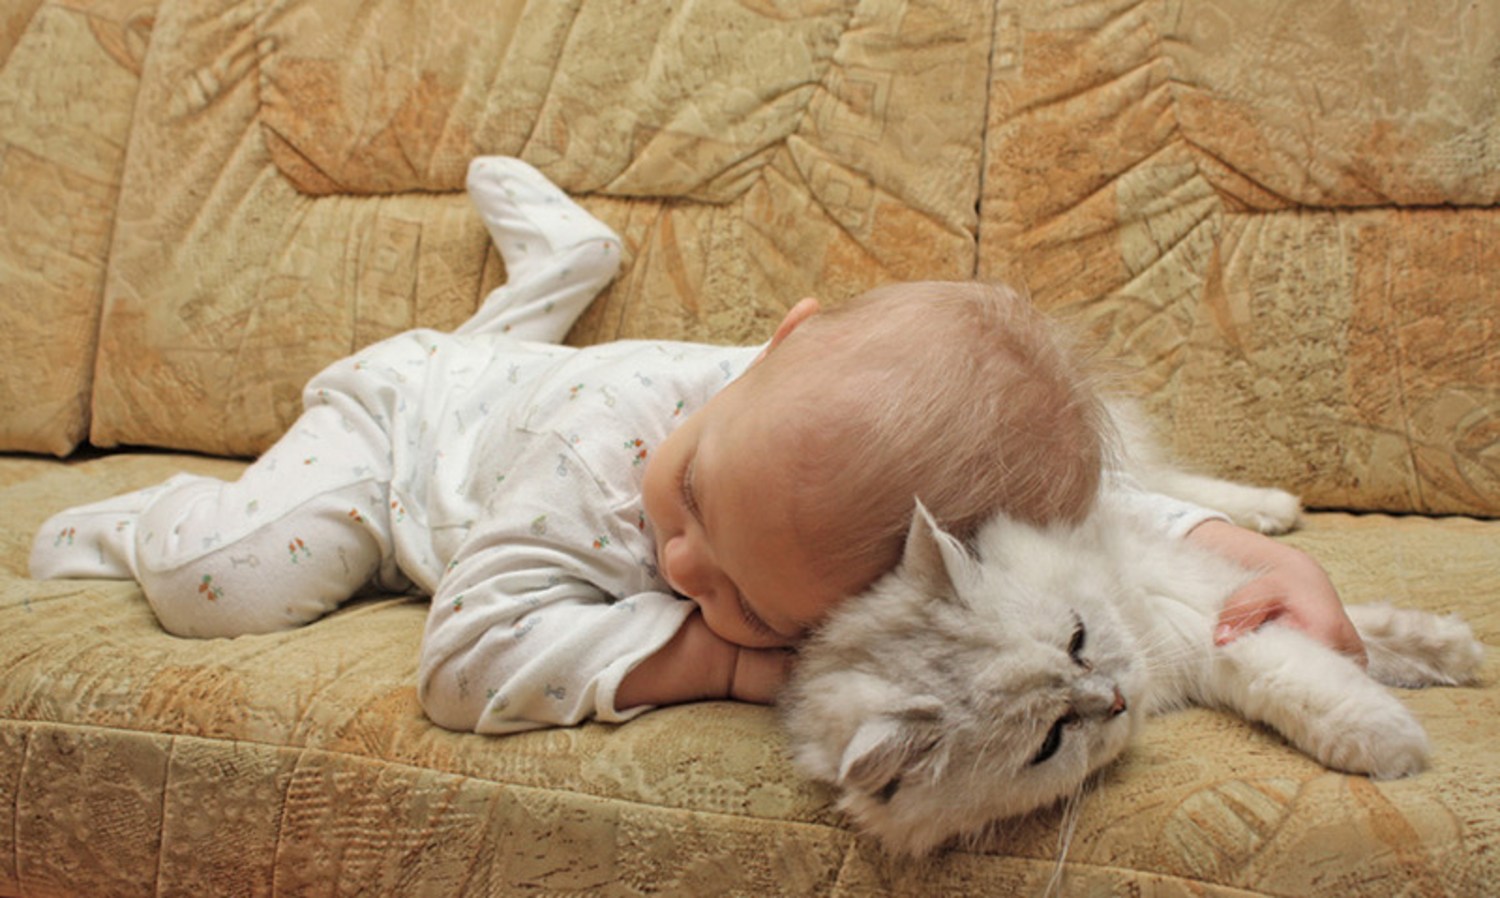 Что делаешь спишь малыш. Кот-подушка. Сладких снов малыш. Спокойной ночи с детьми и животными. Спим сладко дети и животные.